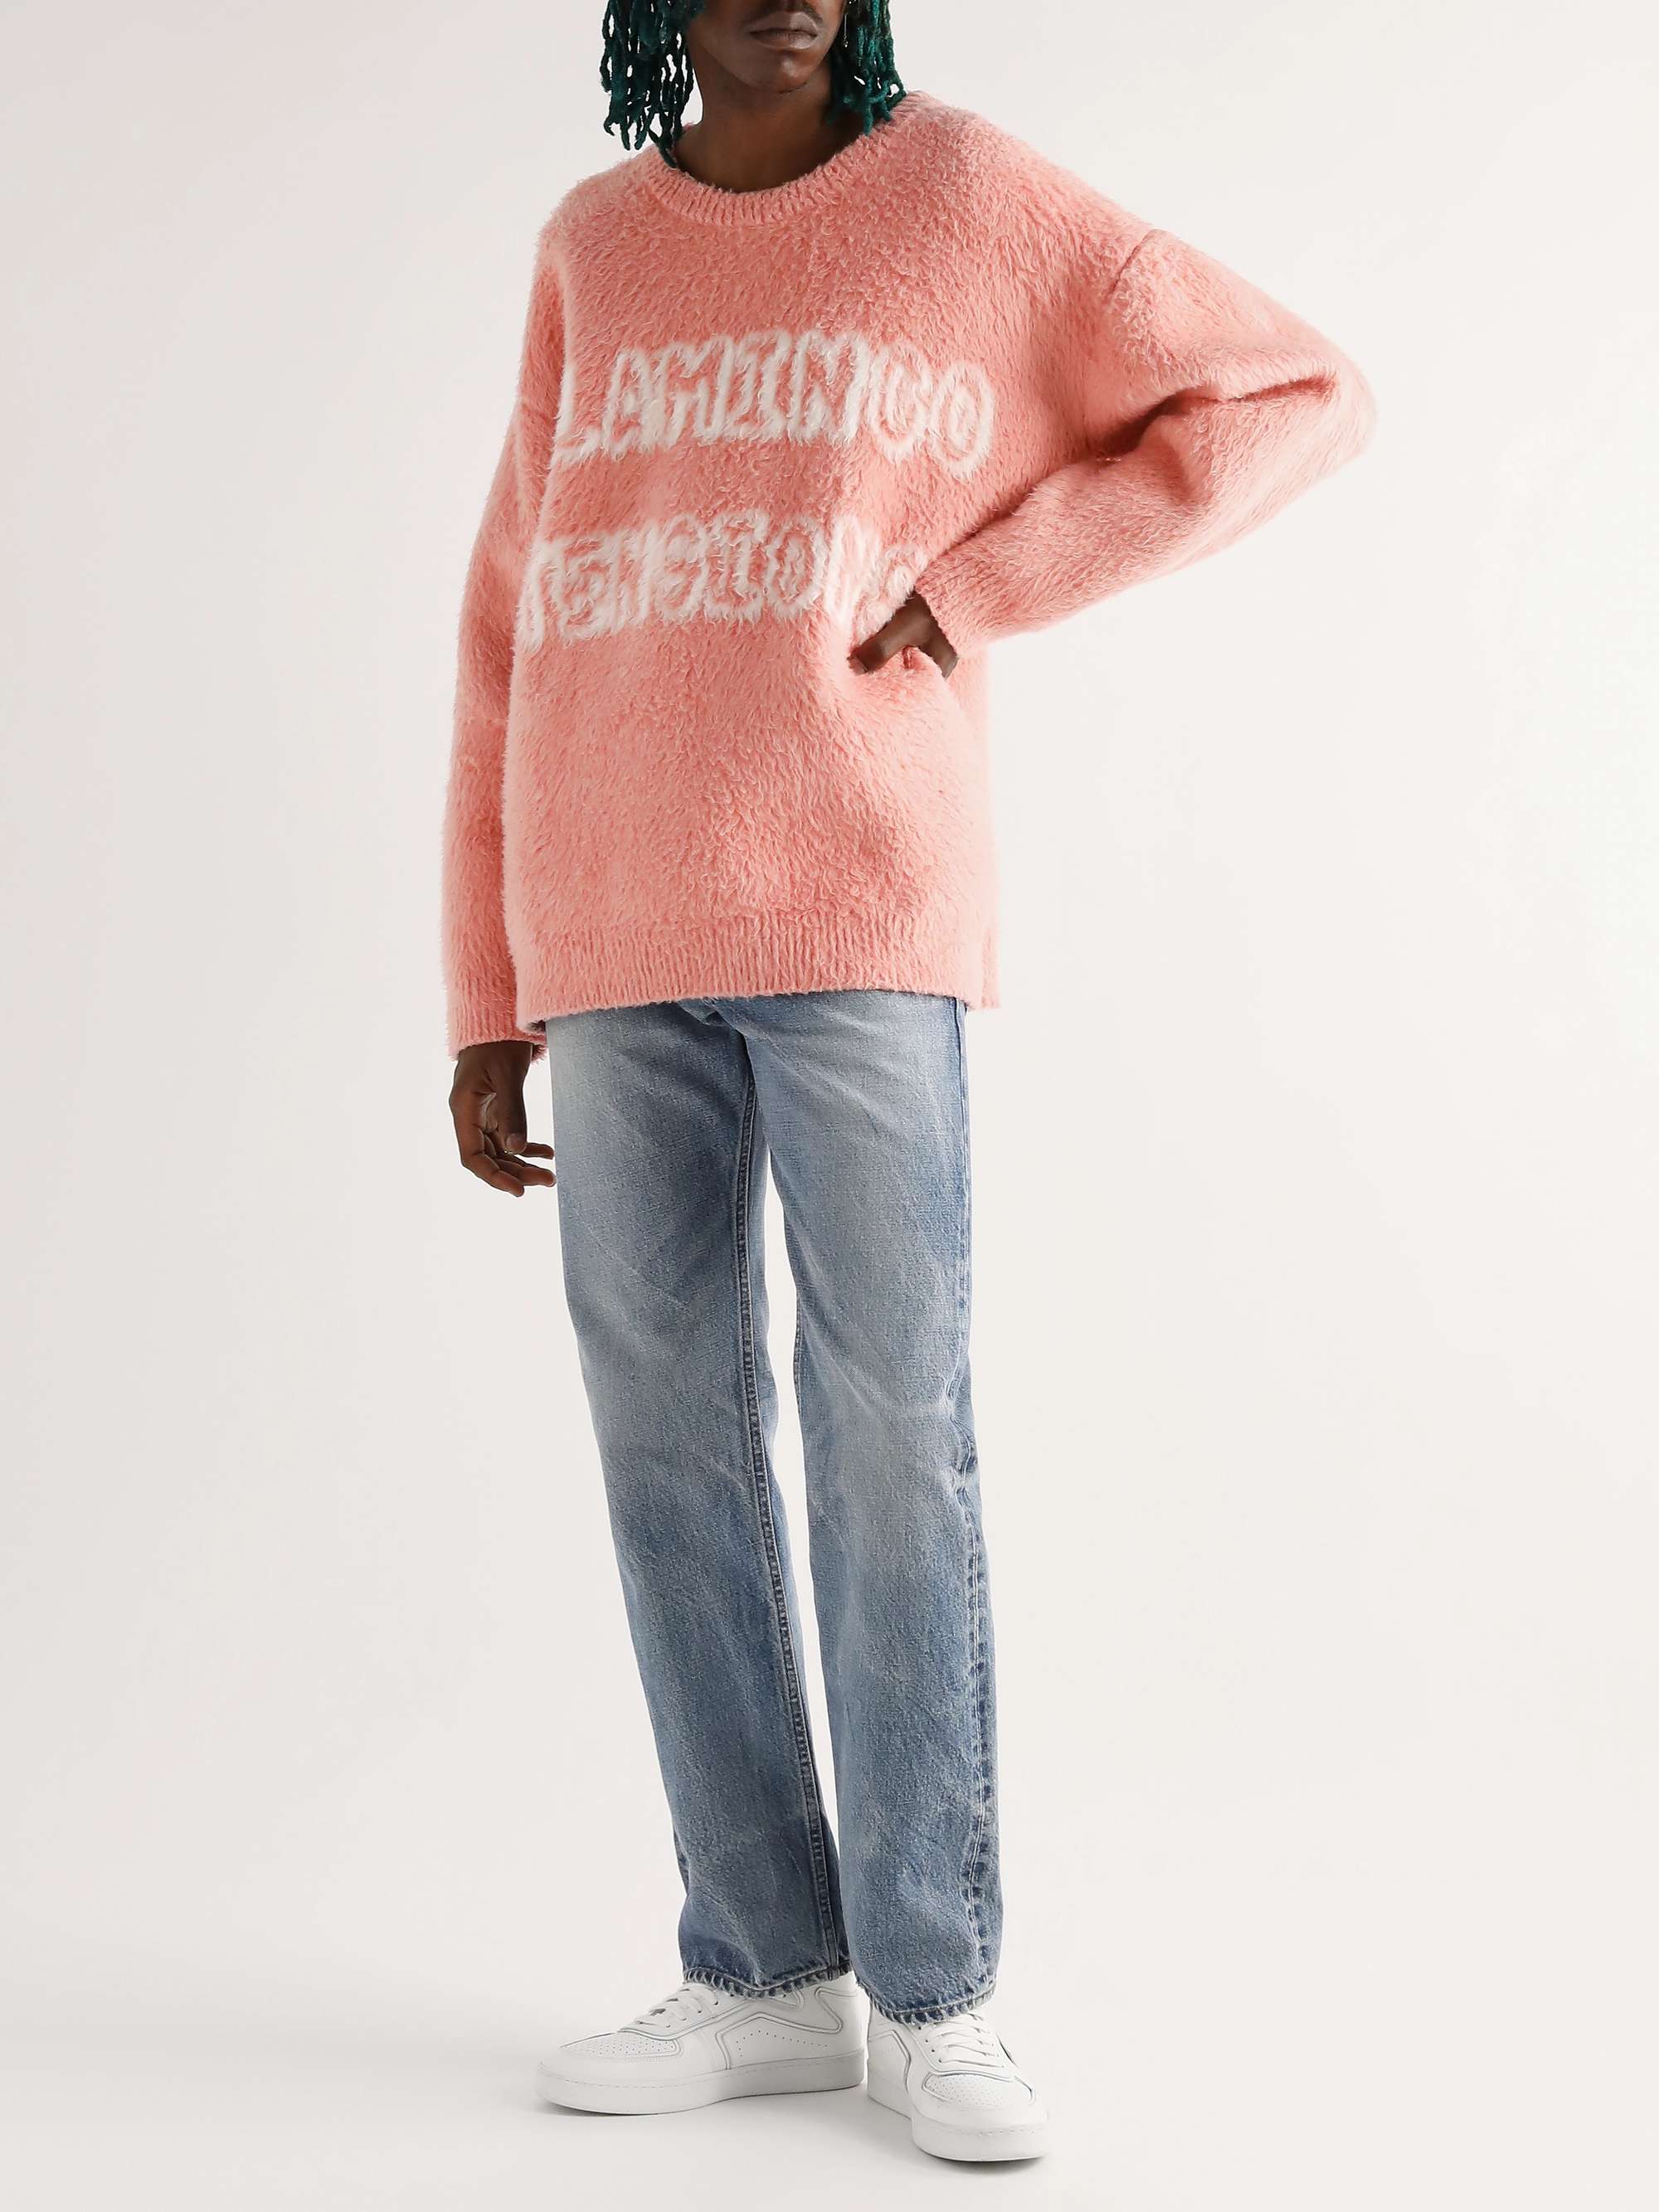 CELINE HOMME Brushed Cotton-Blend Jacquard Sweater | MR PORTER